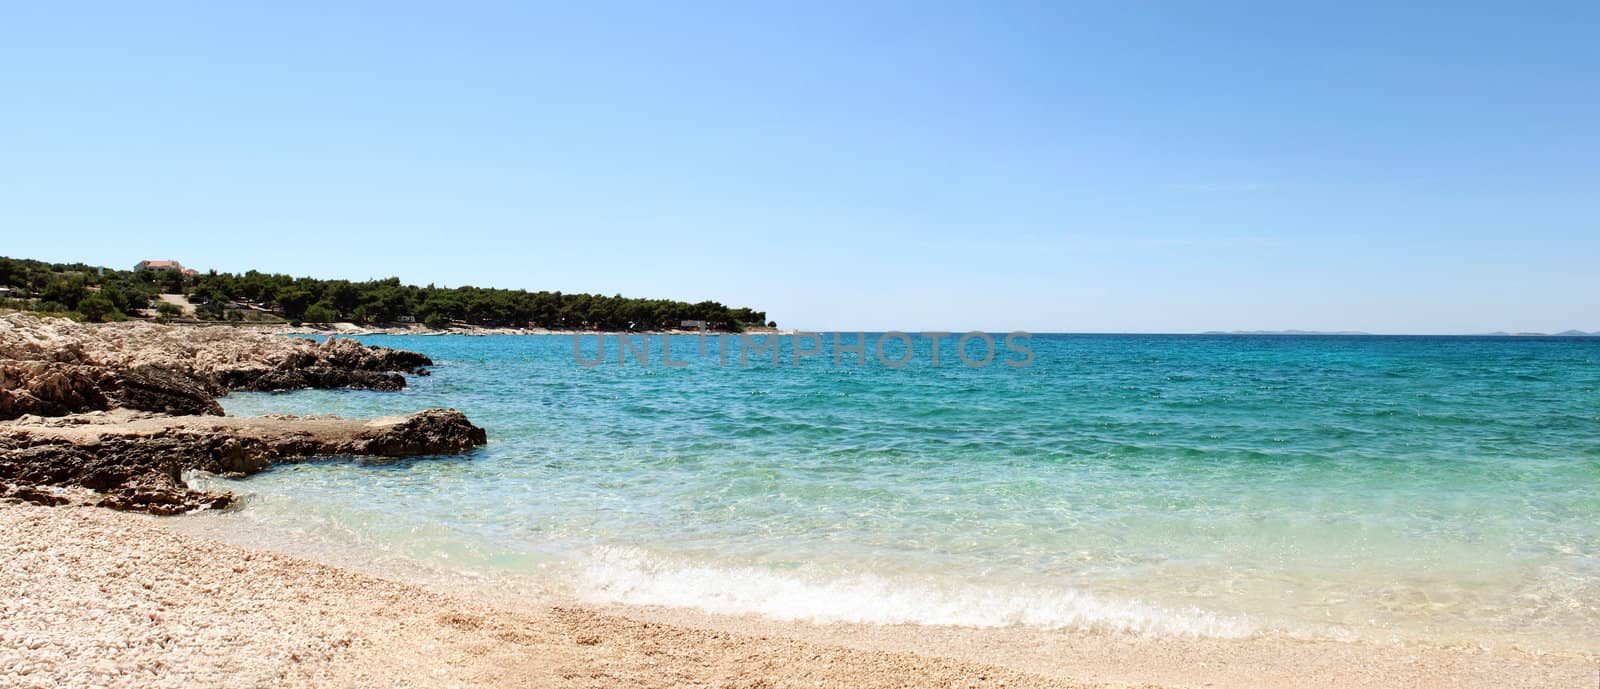 Panorama of beautiful beach in Croatia with rocks